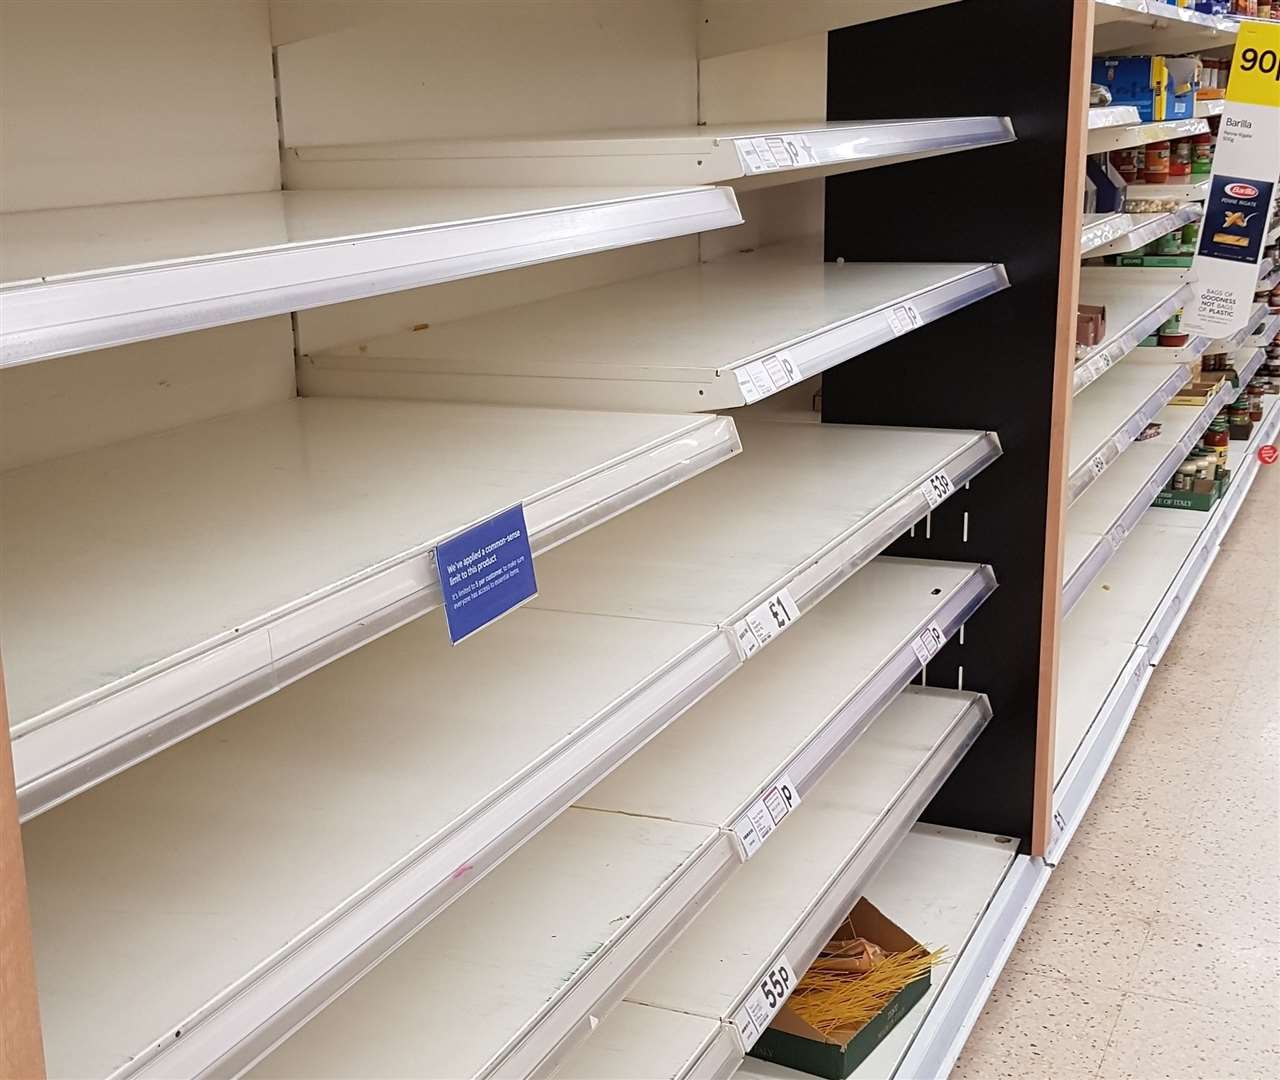 Shelves in Tesco Gillingham stripped bare. Picture: Chris Moffatt